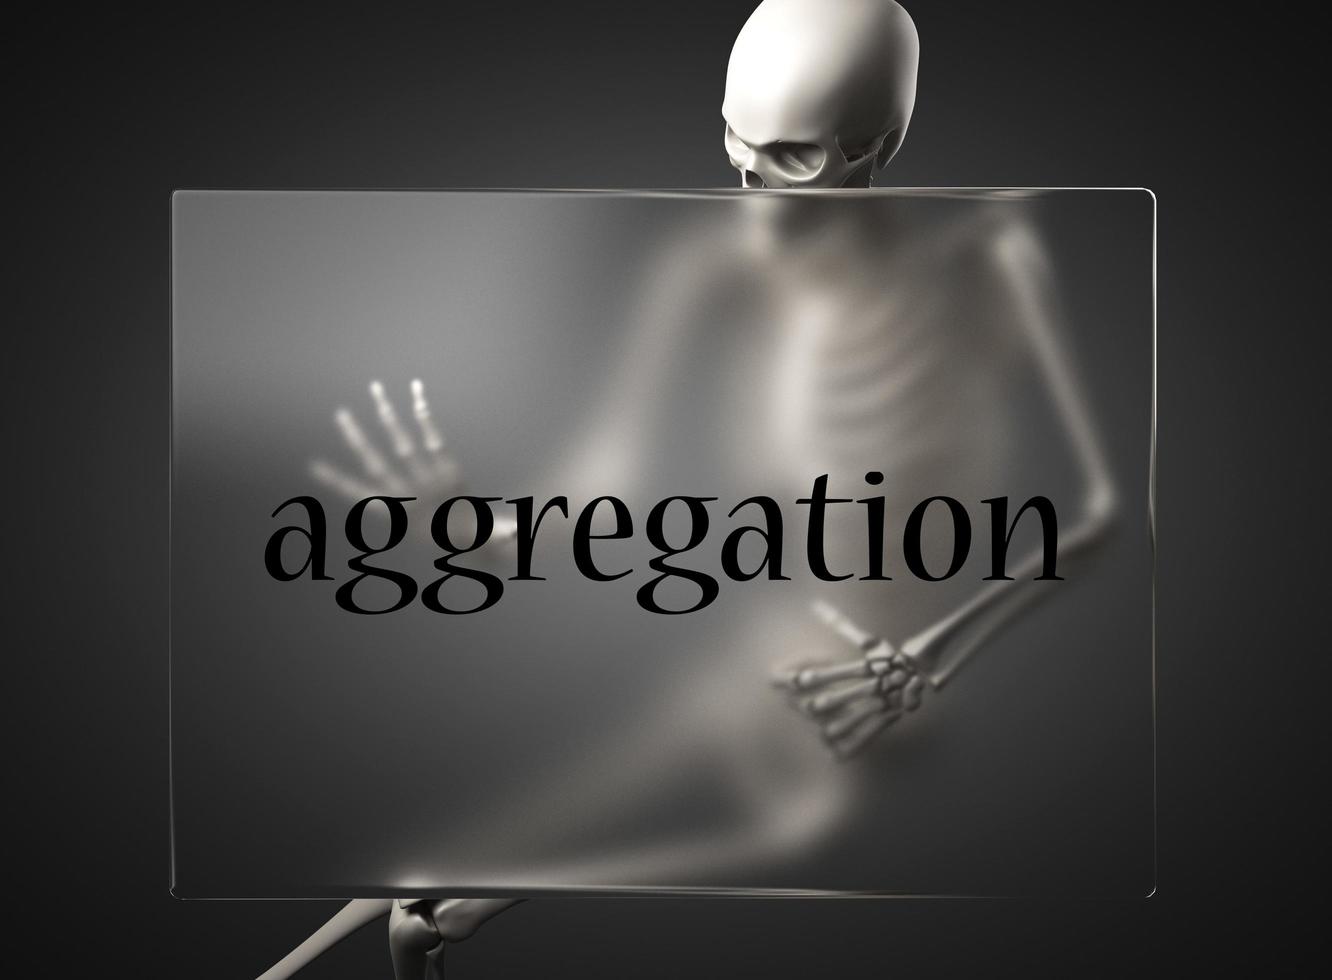 Aggregationswort auf Glas und Skelett foto